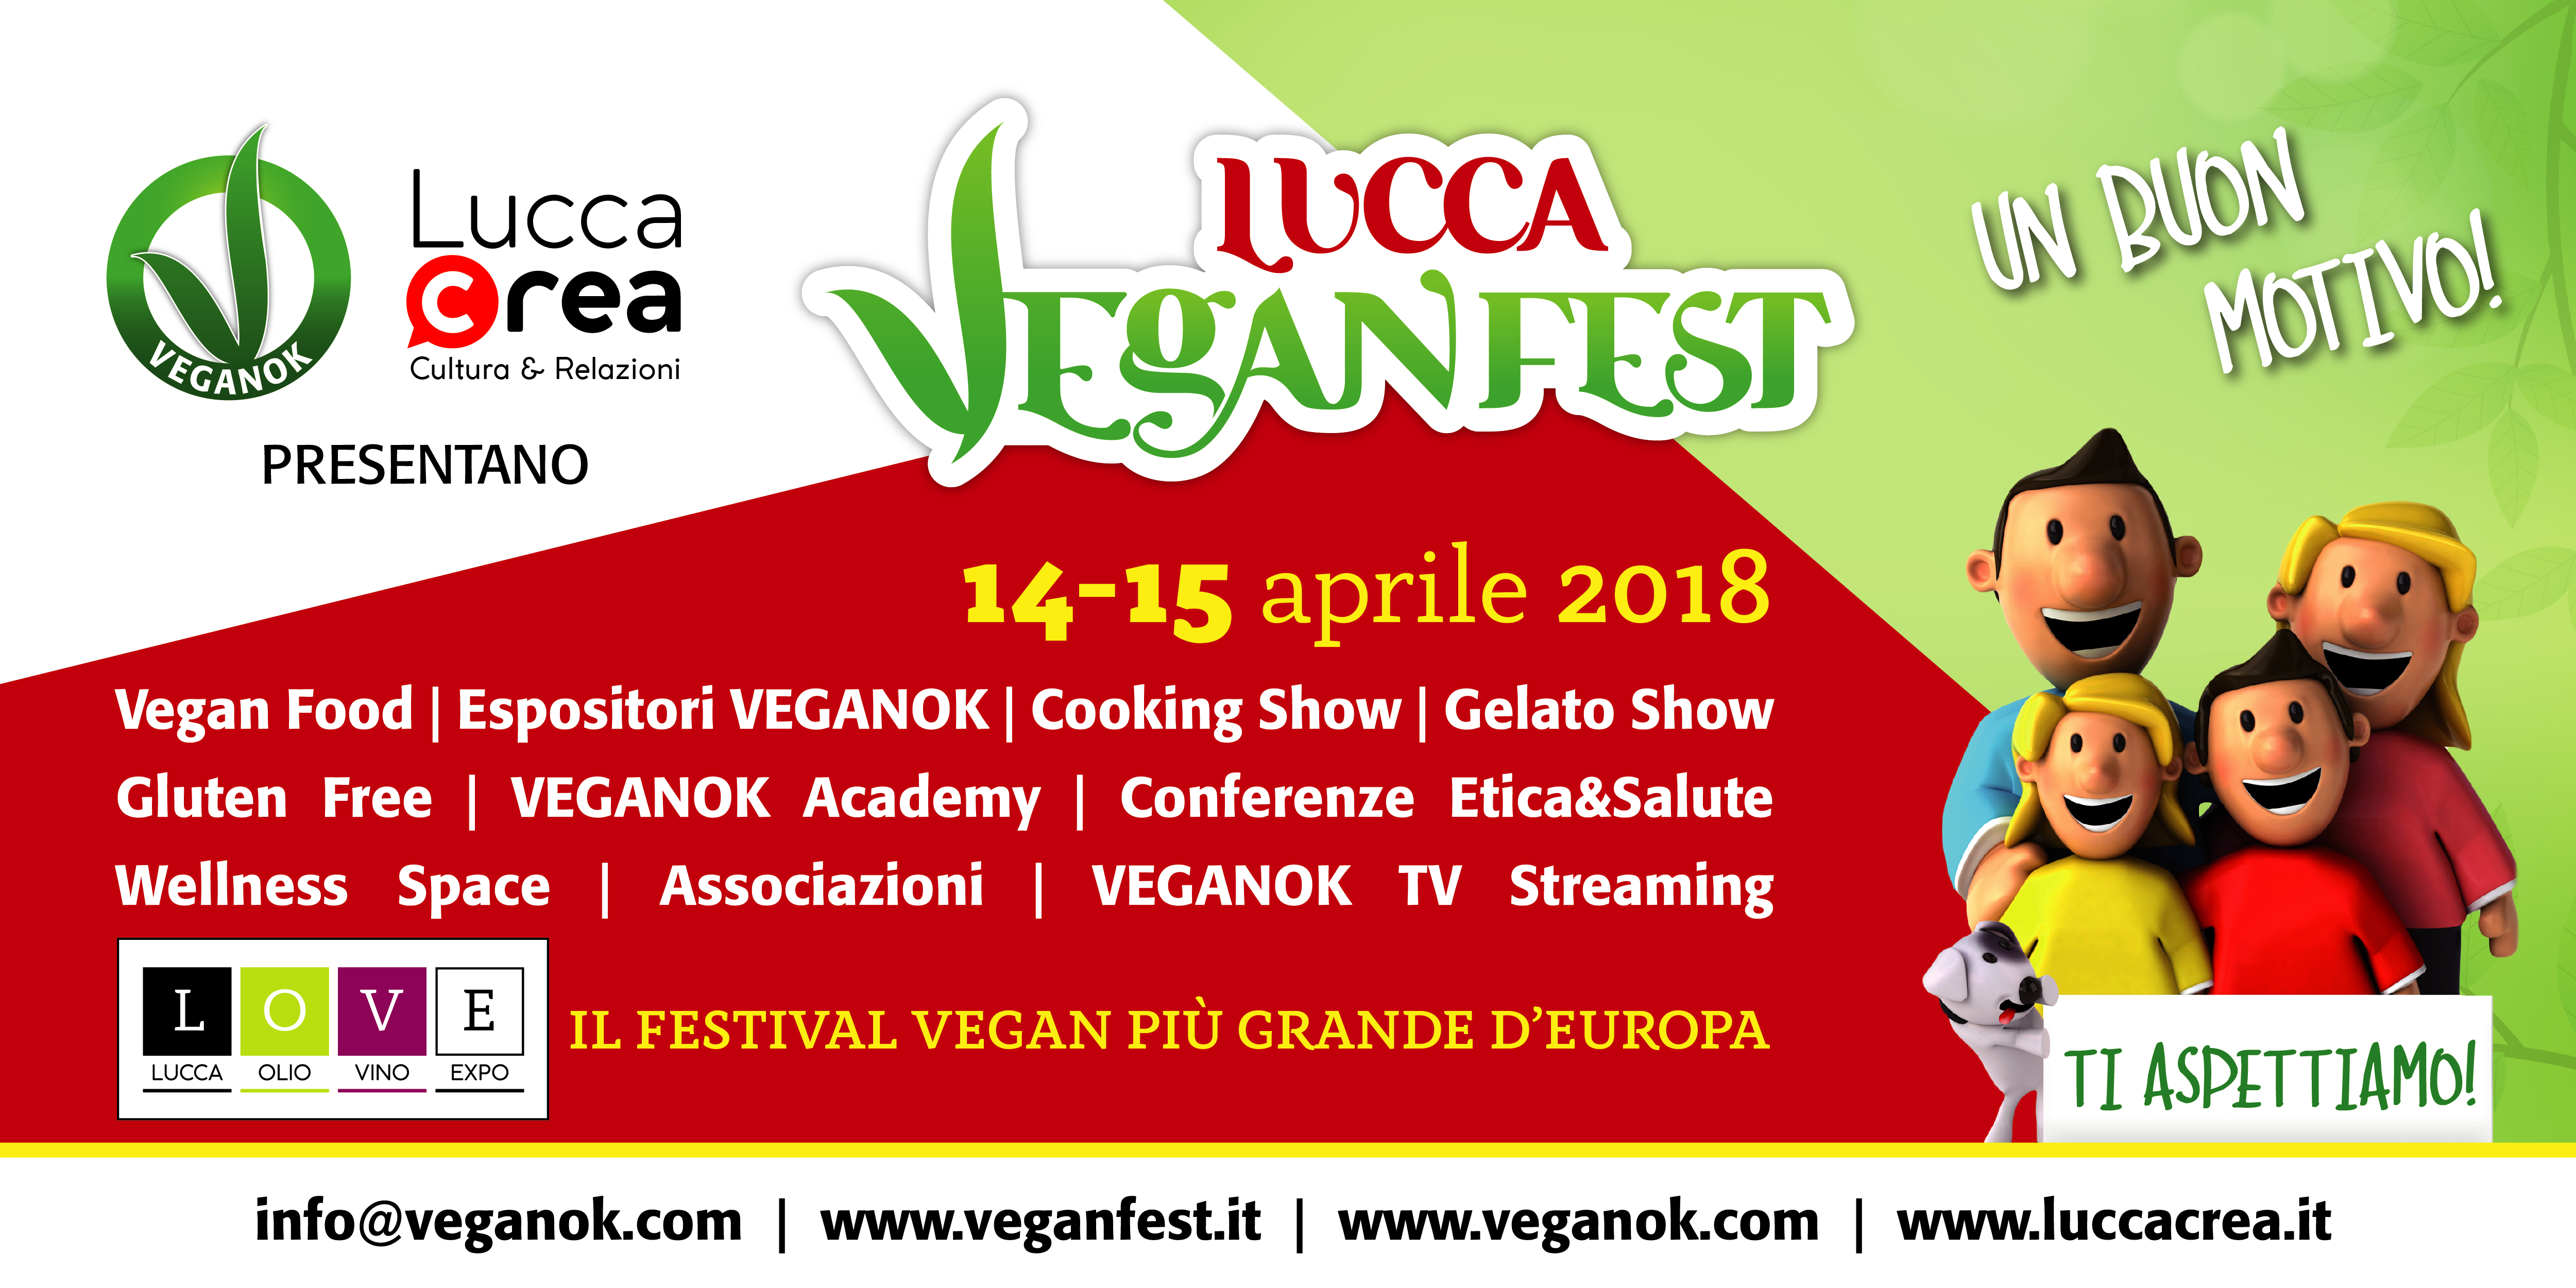 Lucca VeganFest locandina